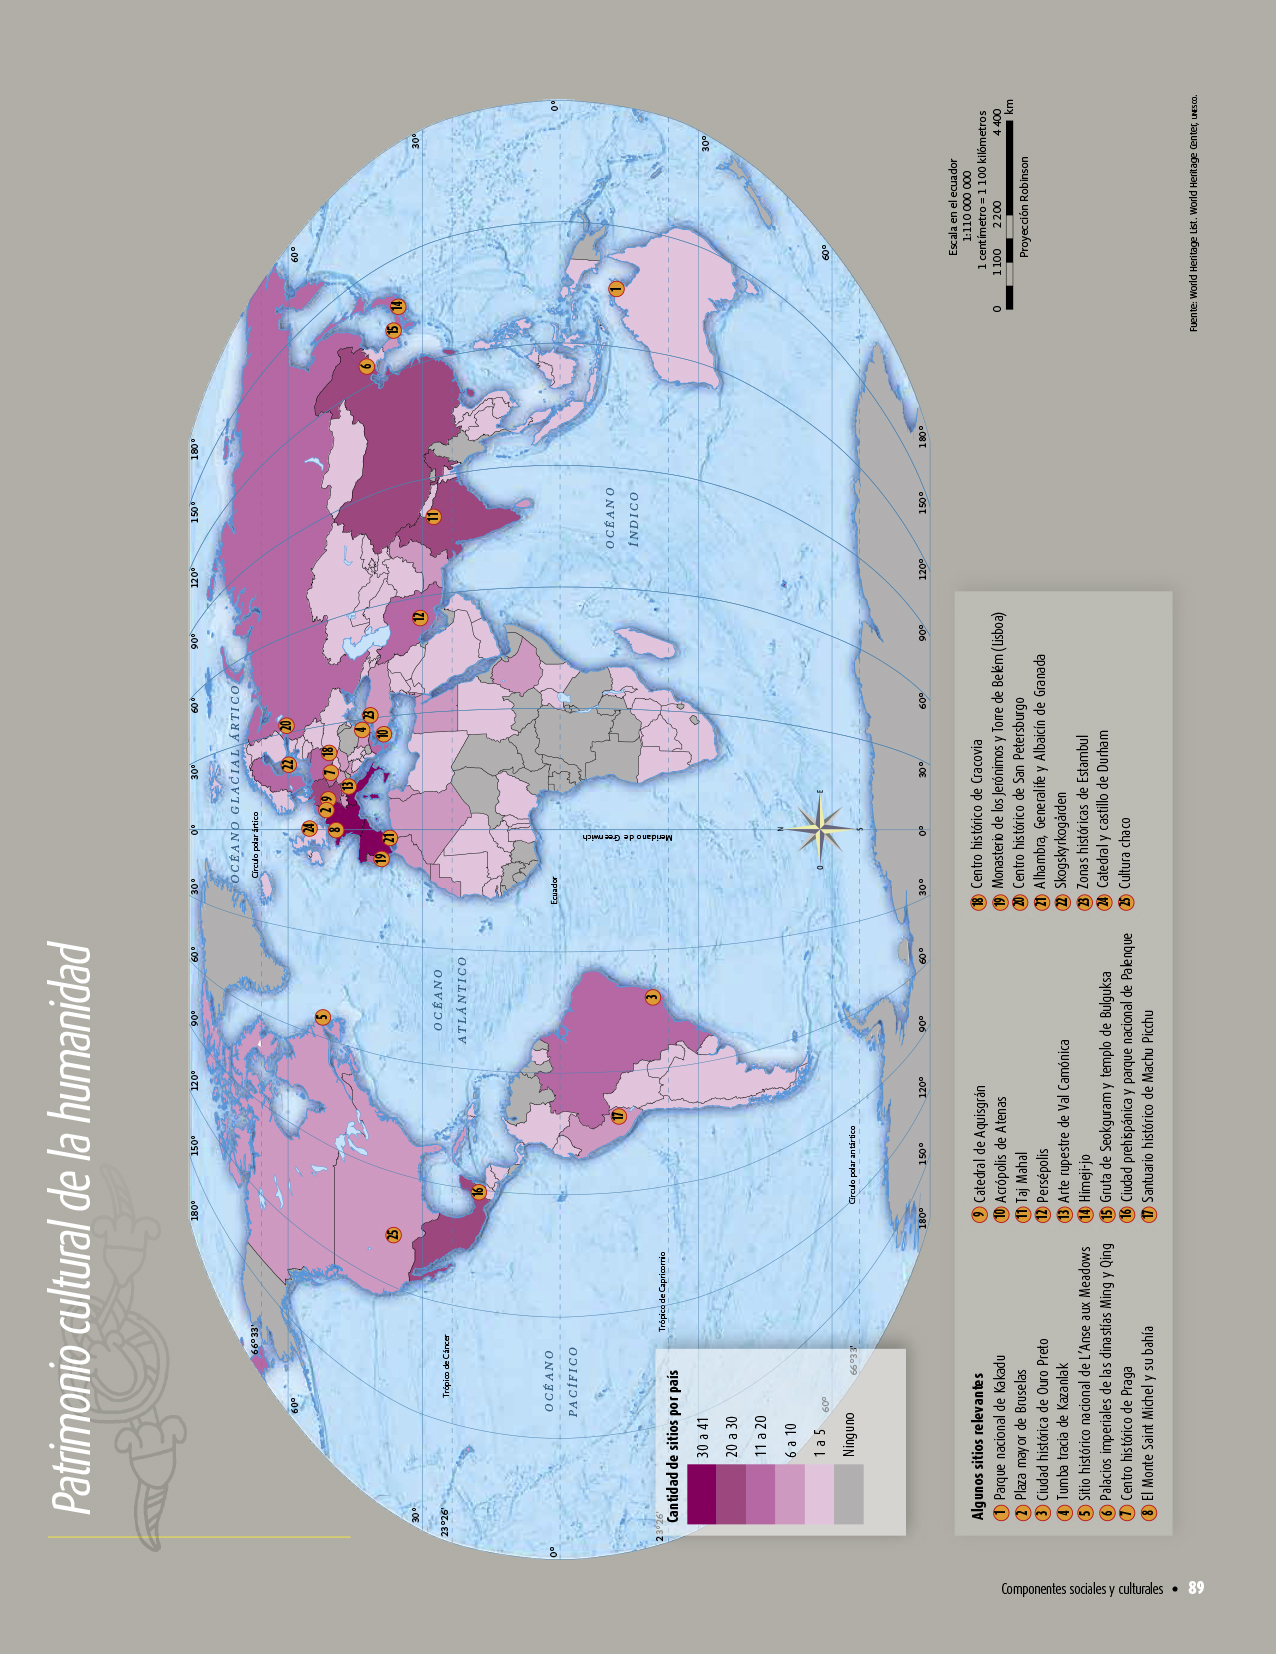 Atlas de geografía del mundo quinto grado 2017-2018 - Página 89 de 122 - Libros de Texto Online